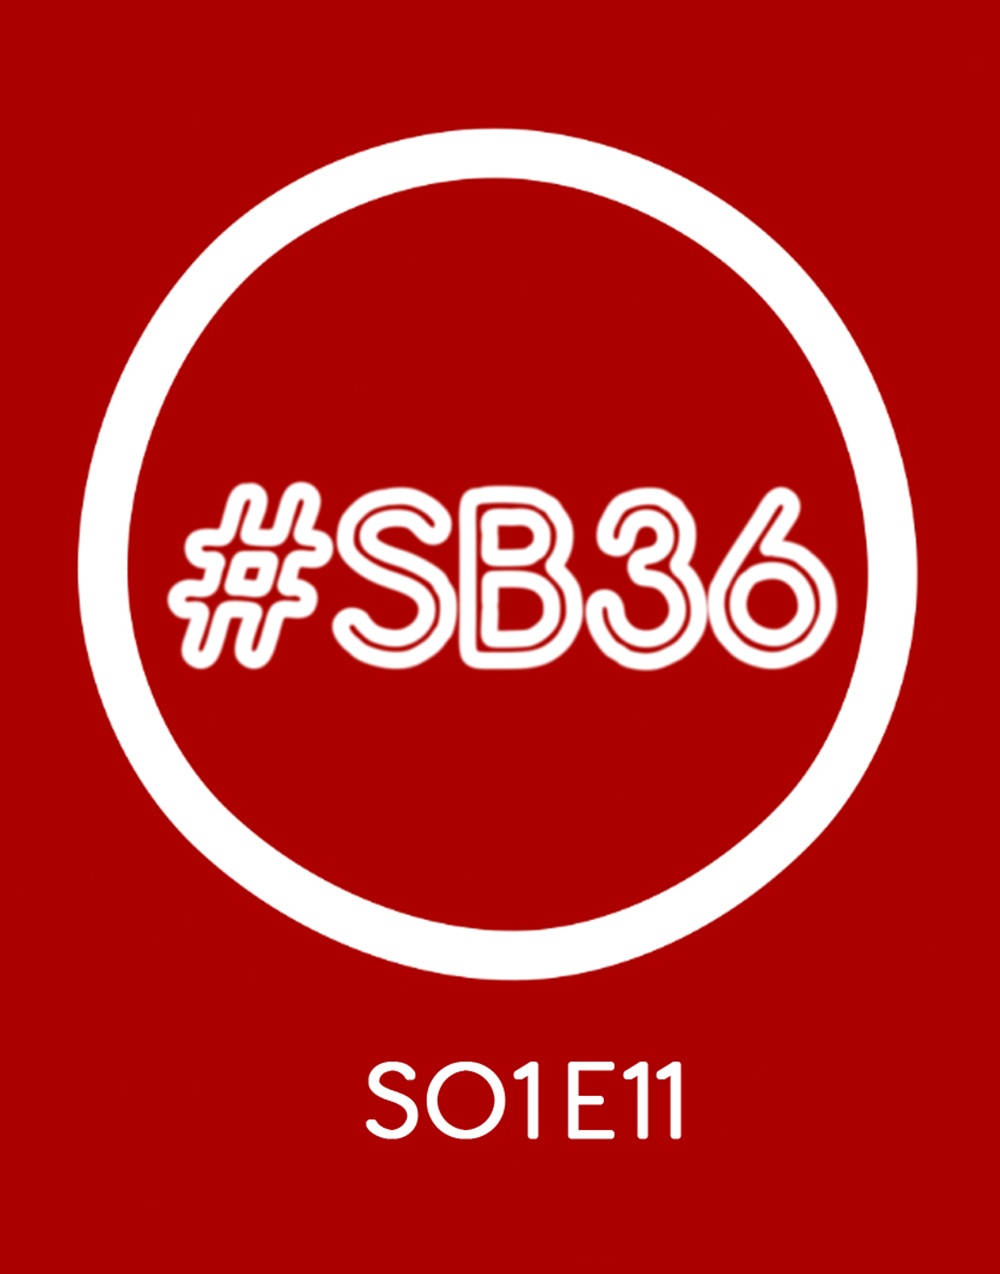 SB36 te cuenta lo último en tendencias digitales